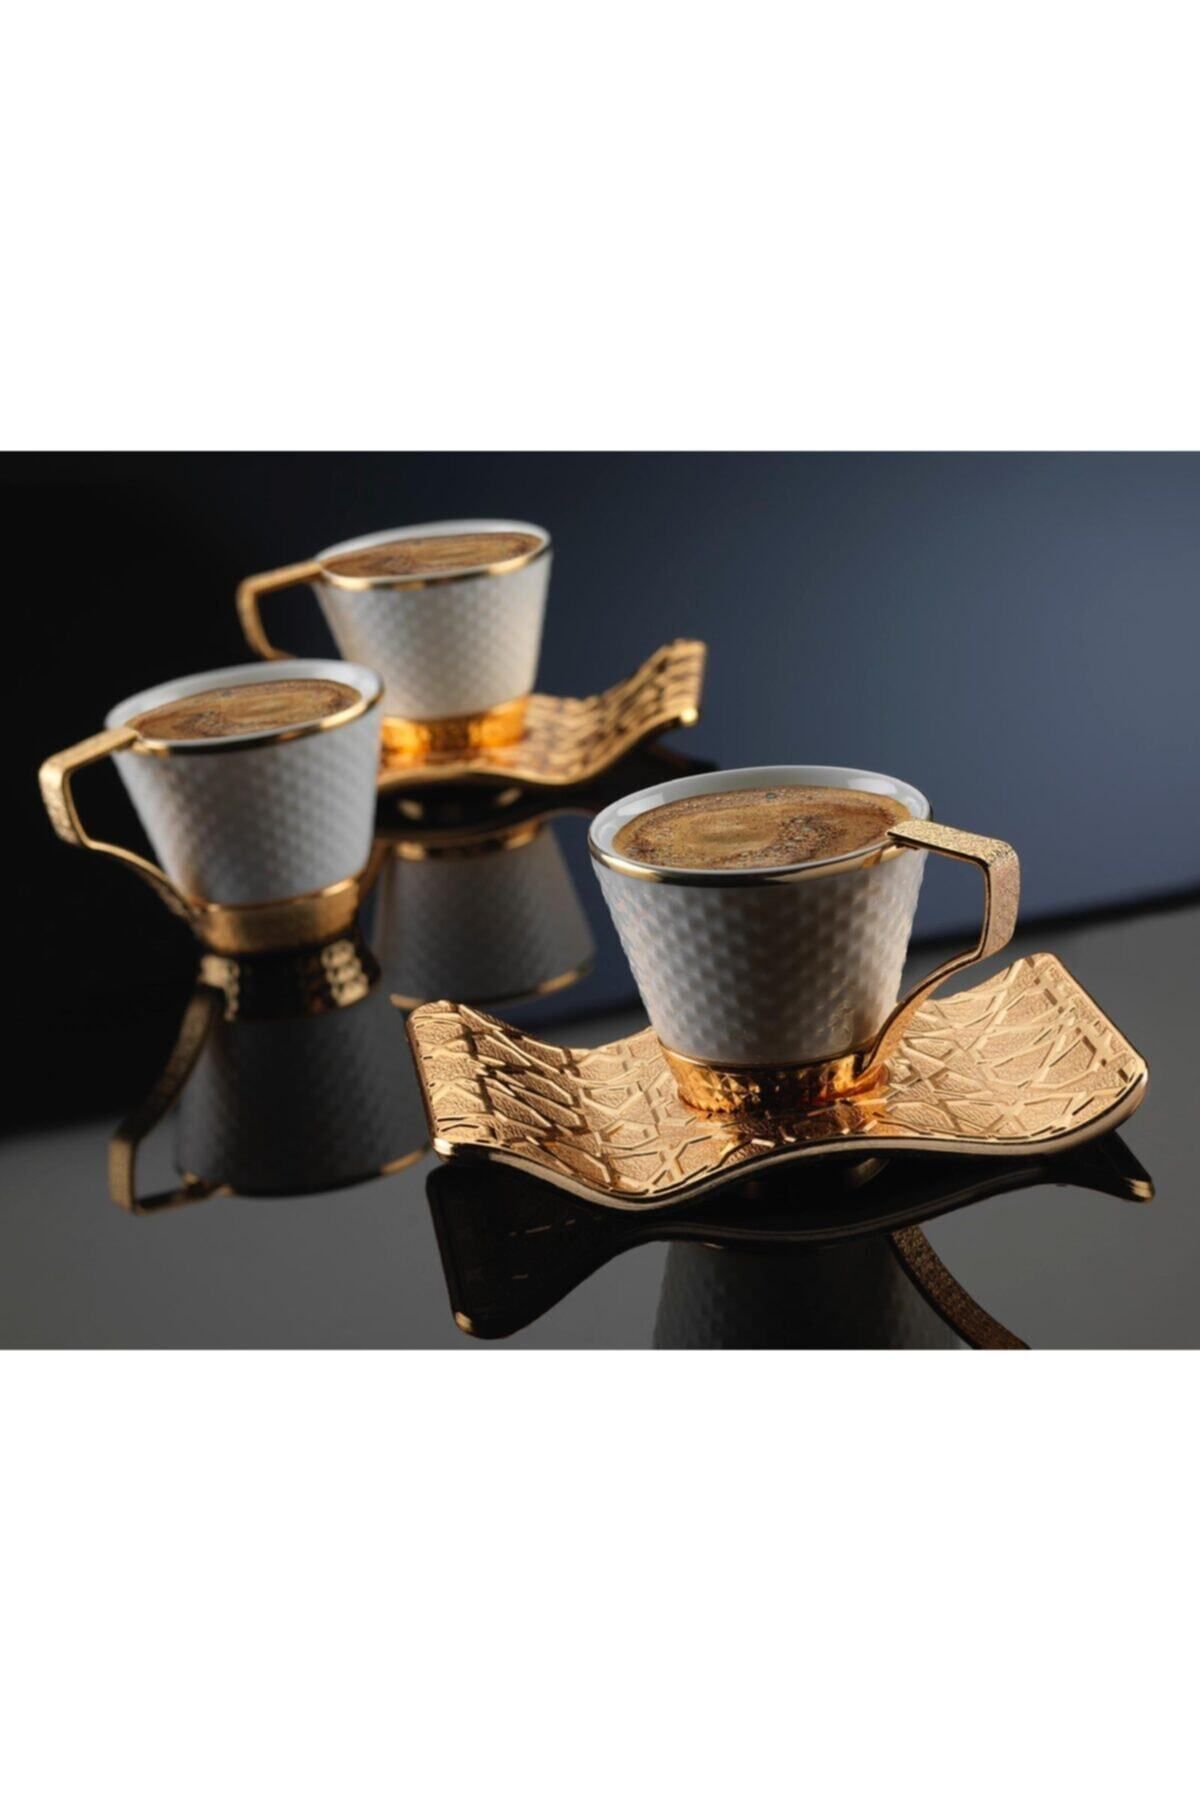 MOS'EV Gold Kahve Takımı 12 Parça 6 Kişilik